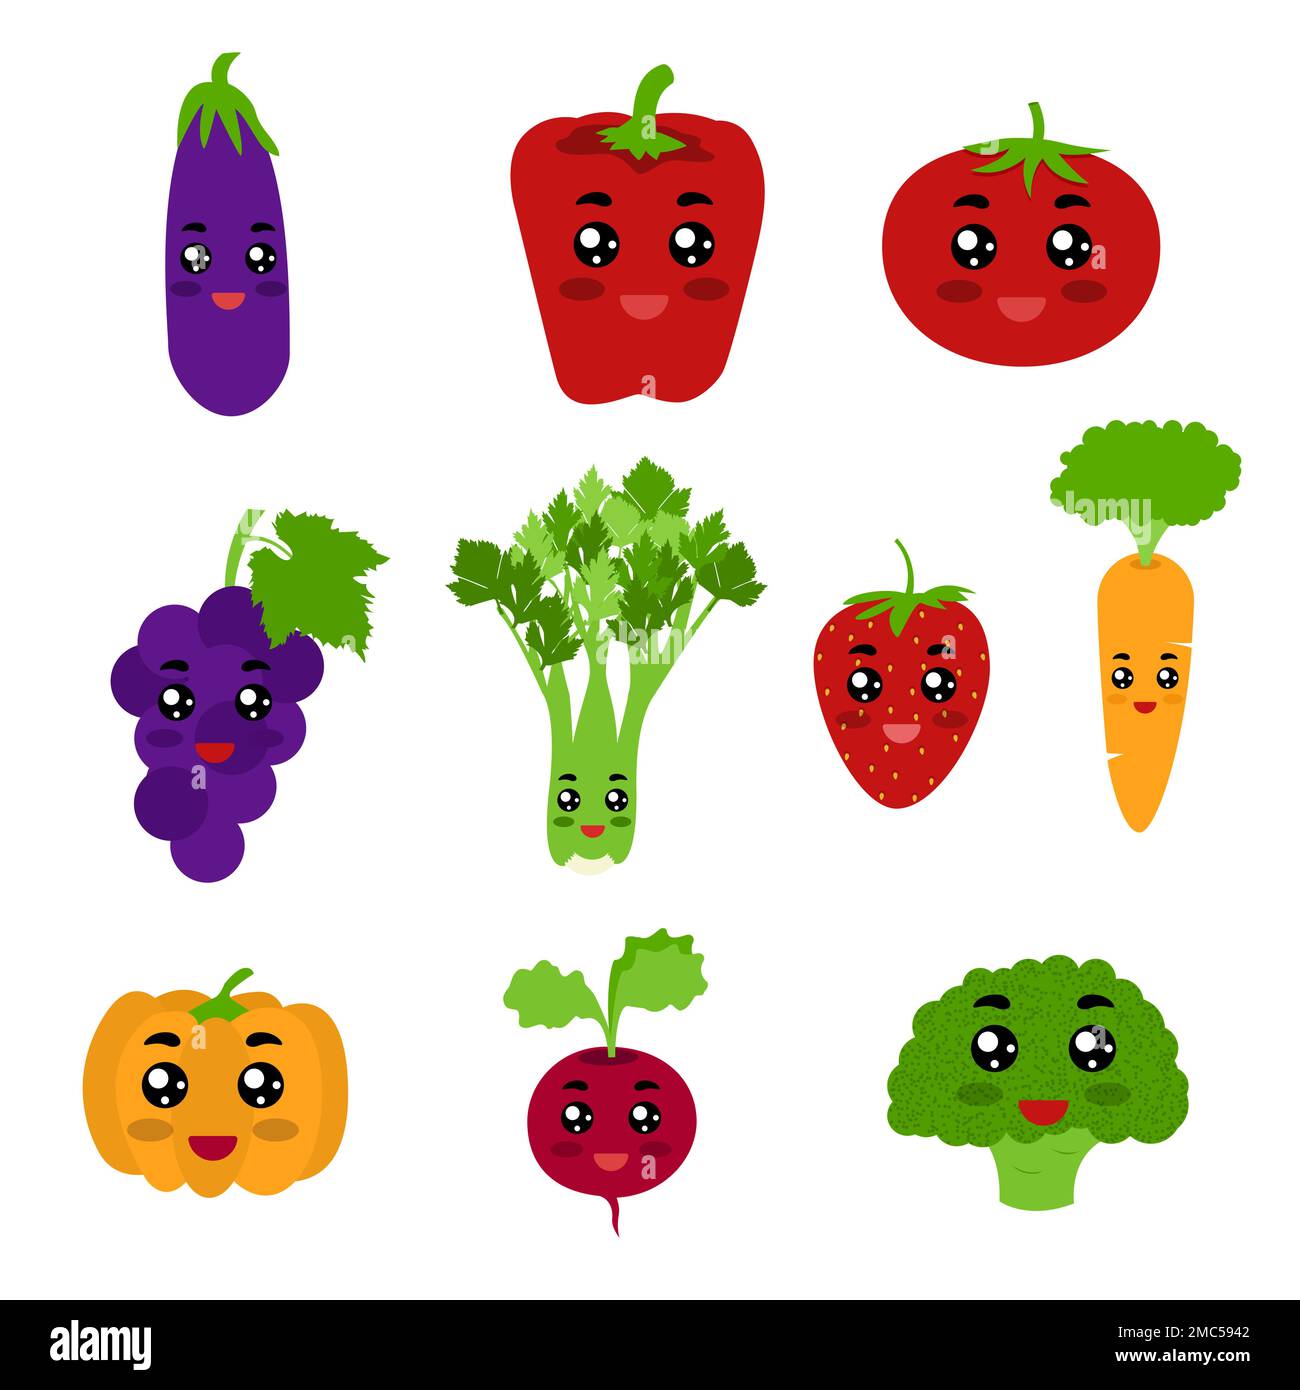 Fruitas et légumes comme des personnages de kawaii. Les fruits et légumes sont l'aubergine, le poivron, la tomate, le raisin, le céleri, persil, fraise, carotte Illustration de Vecteur